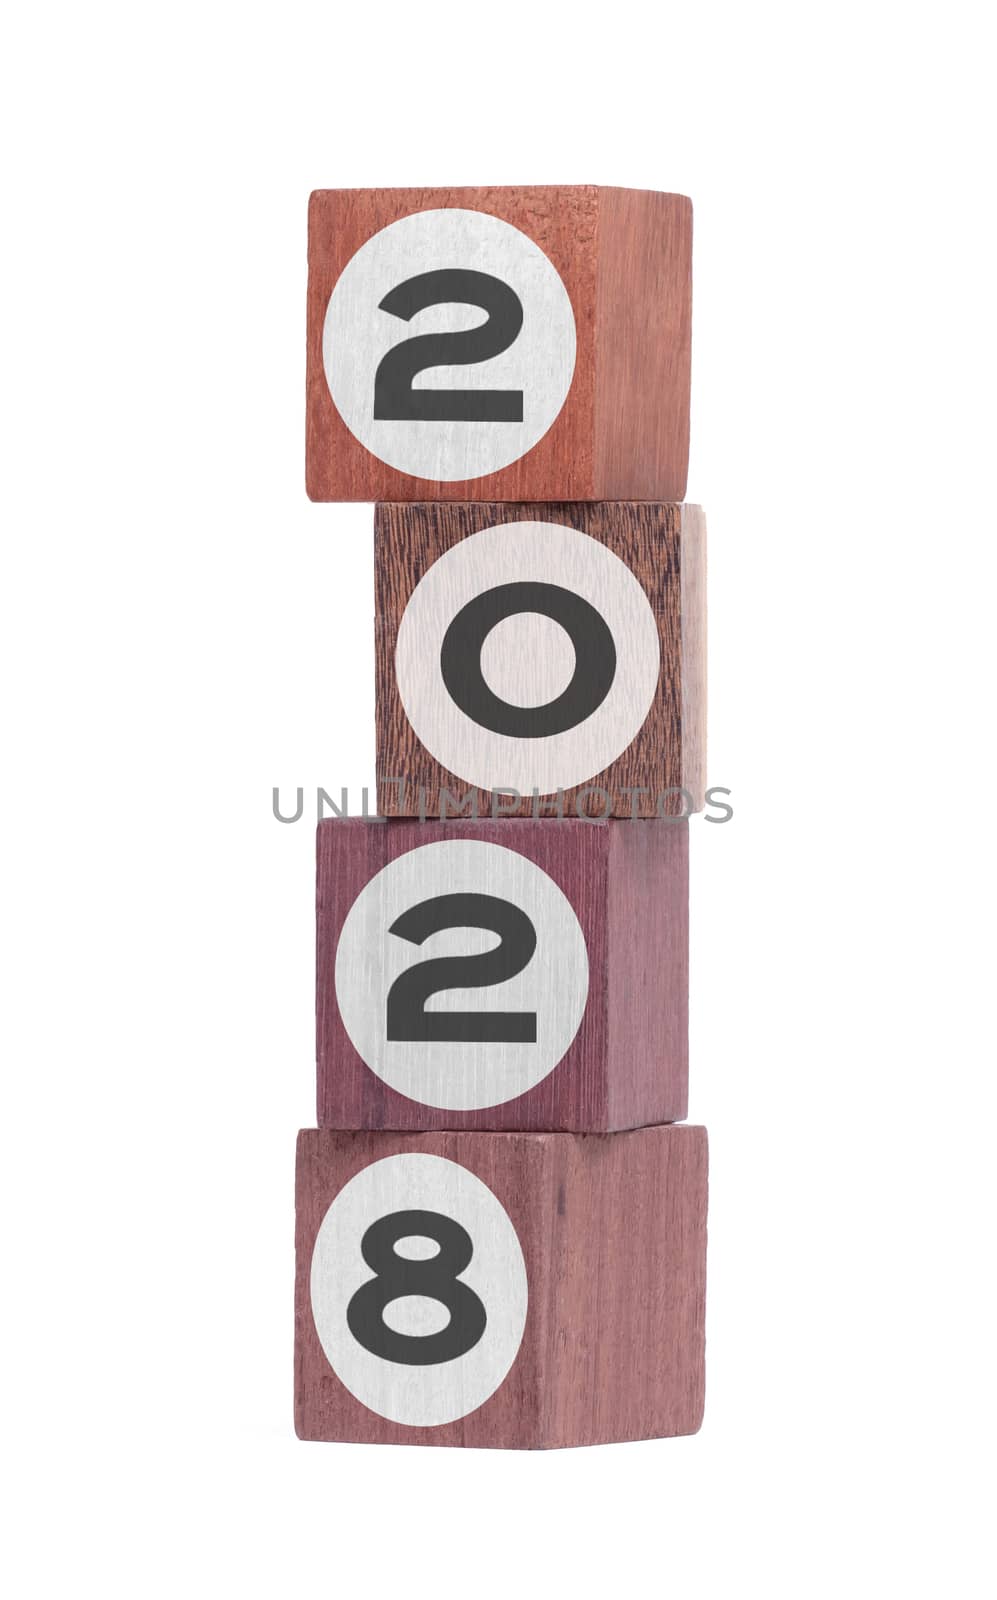 Four isolated hardwood toy blocks on white, saying 2028